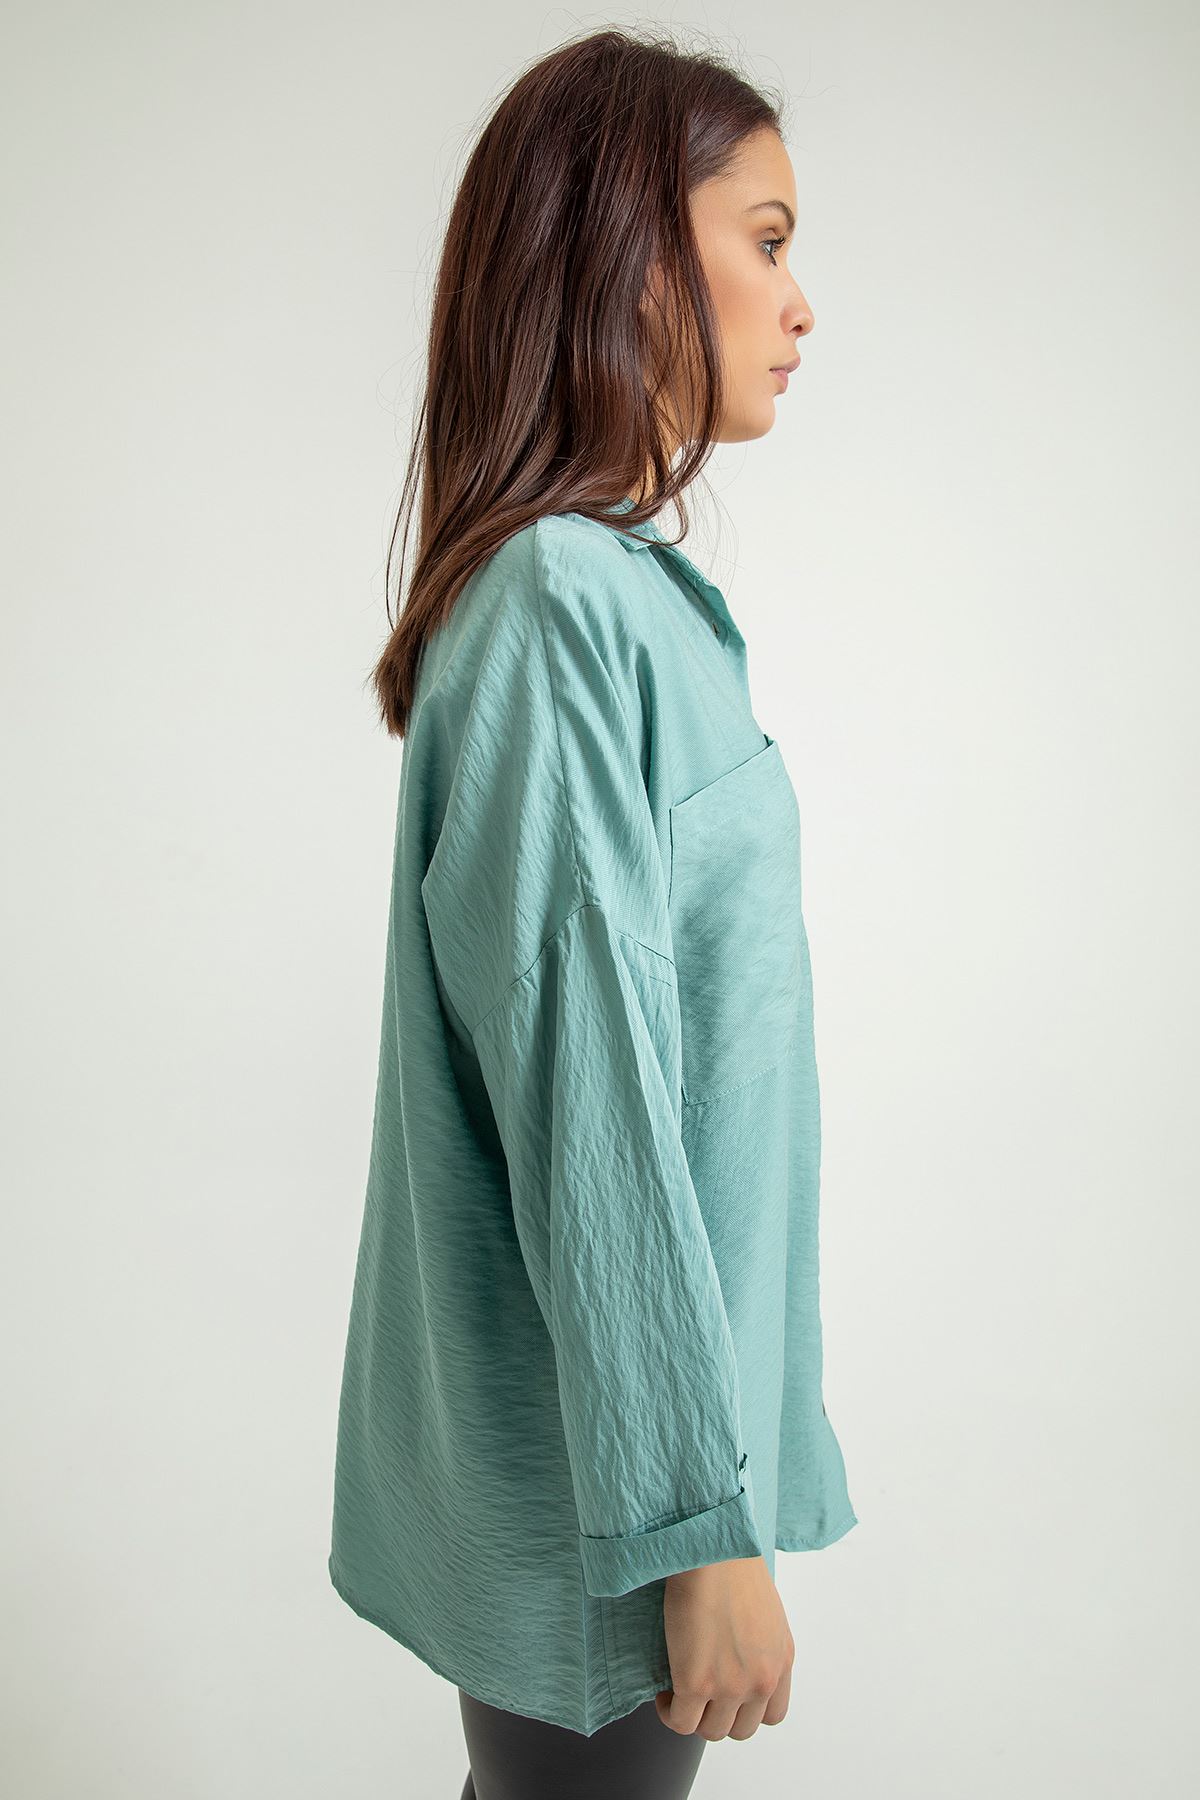 قميص نسائي قماش ايروبين ذراع طويلة طوق القميص تحت الحوض حجم كبير - اخضر فاتح